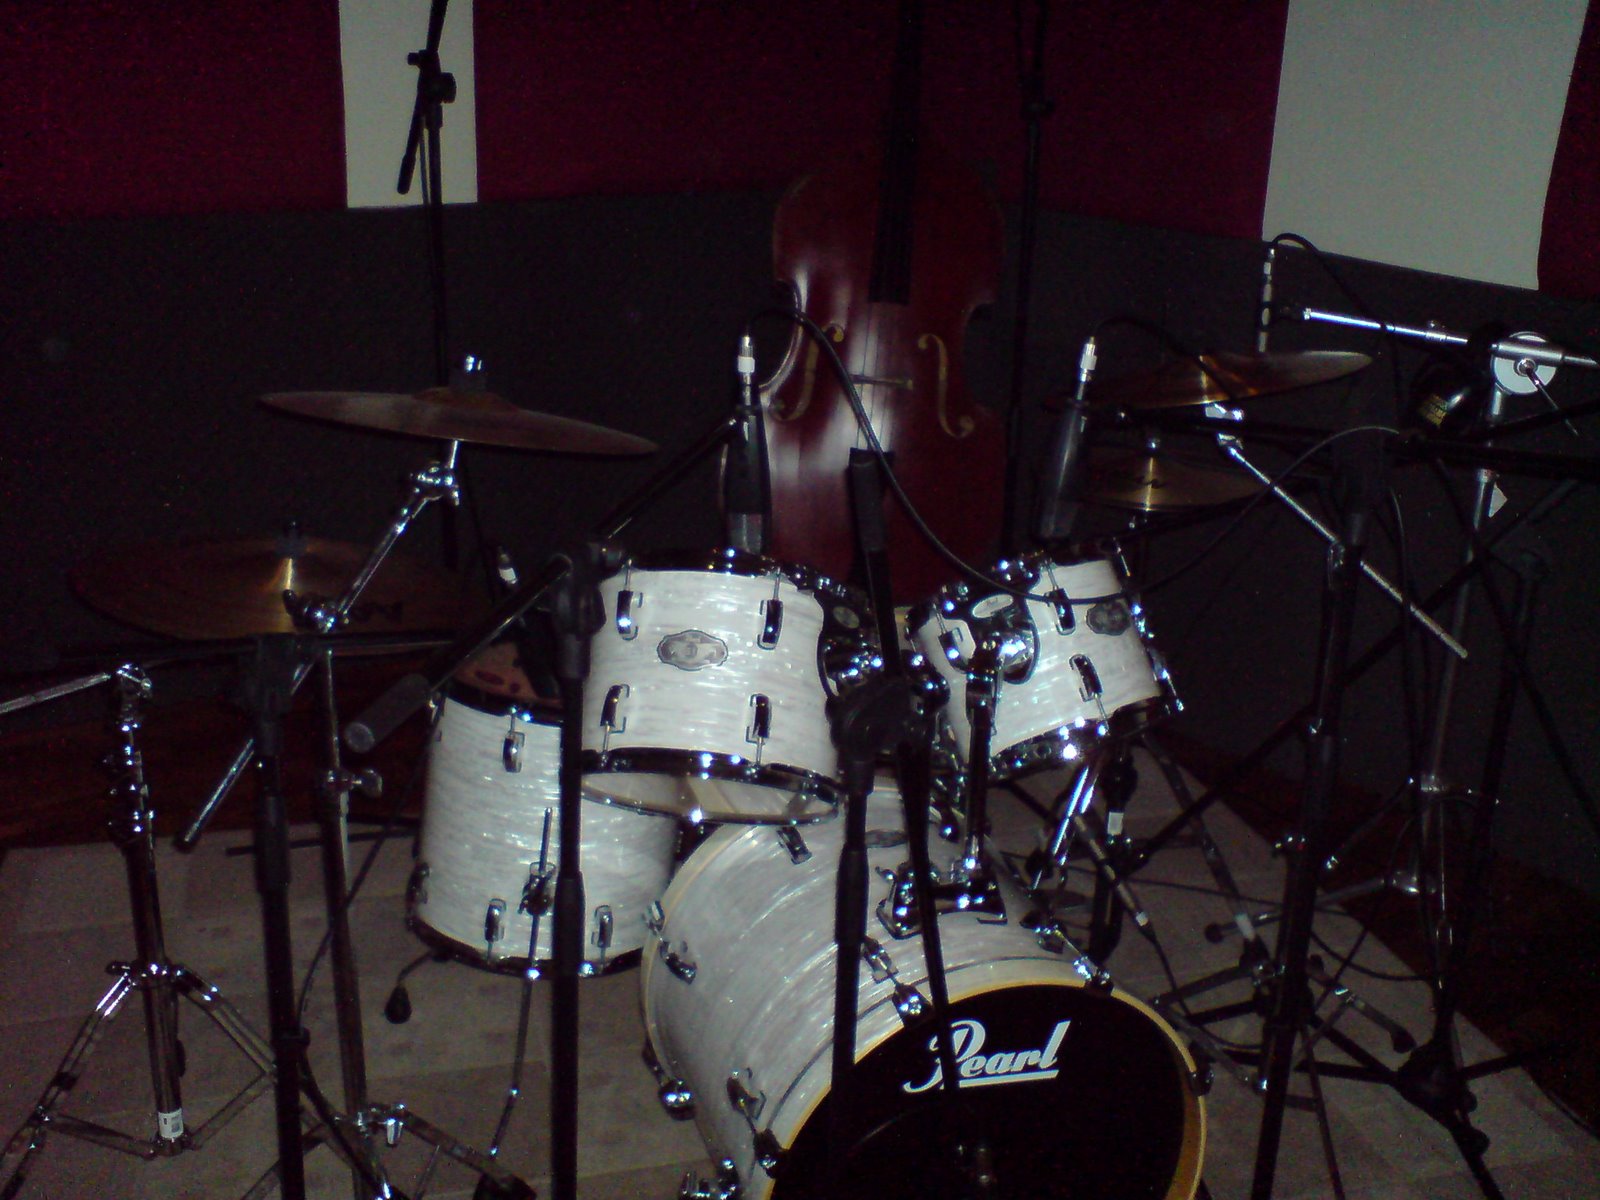 [The+drum+(1).JPG]